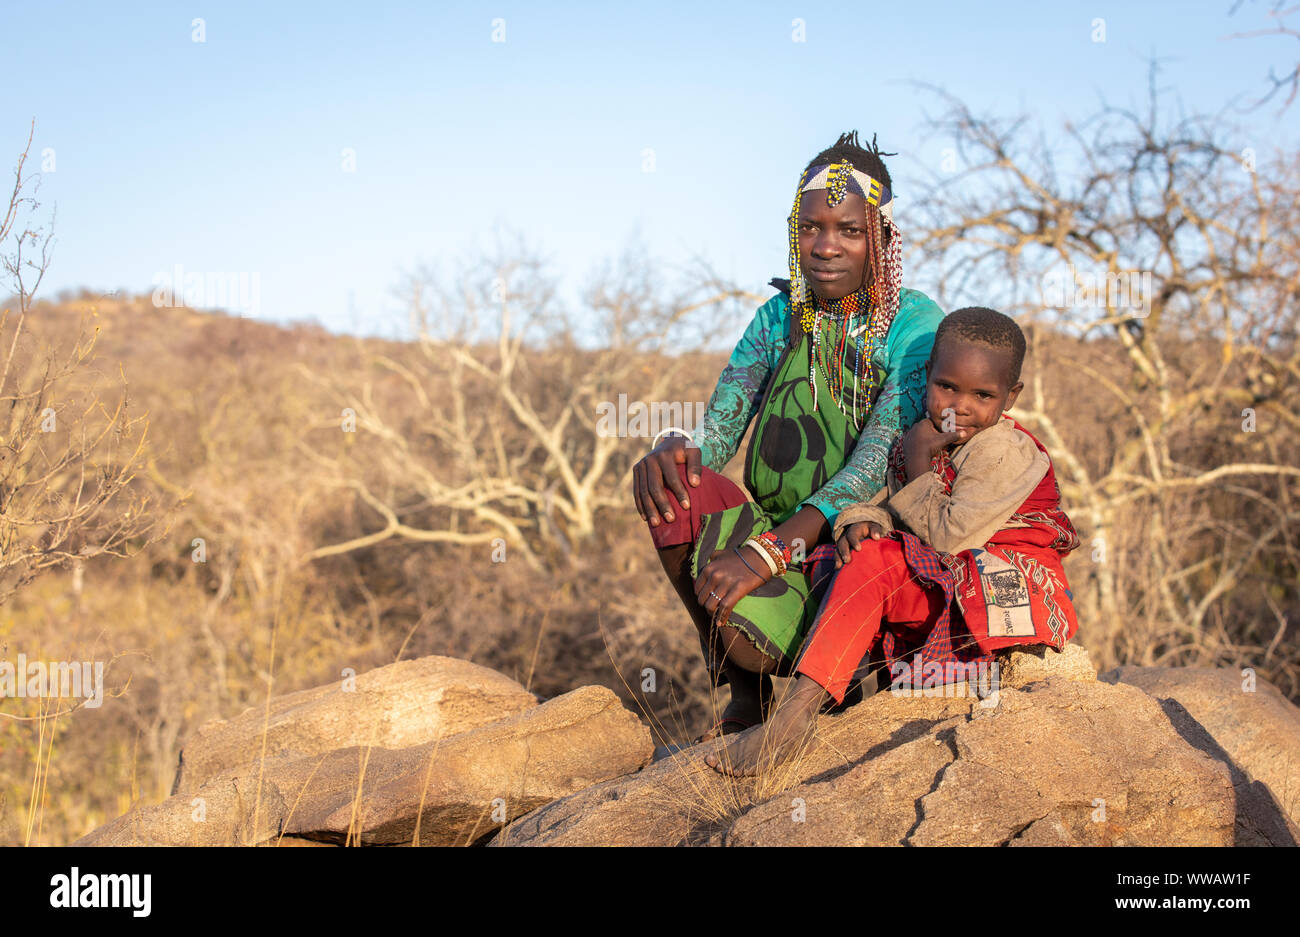 El lago Eyasi, Tanzania, 12 de septiembre de 2019: mujer Hadzabe en vestimentas tradicionales en una naturaleza del lago Eyasi valle donde vive Foto de stock